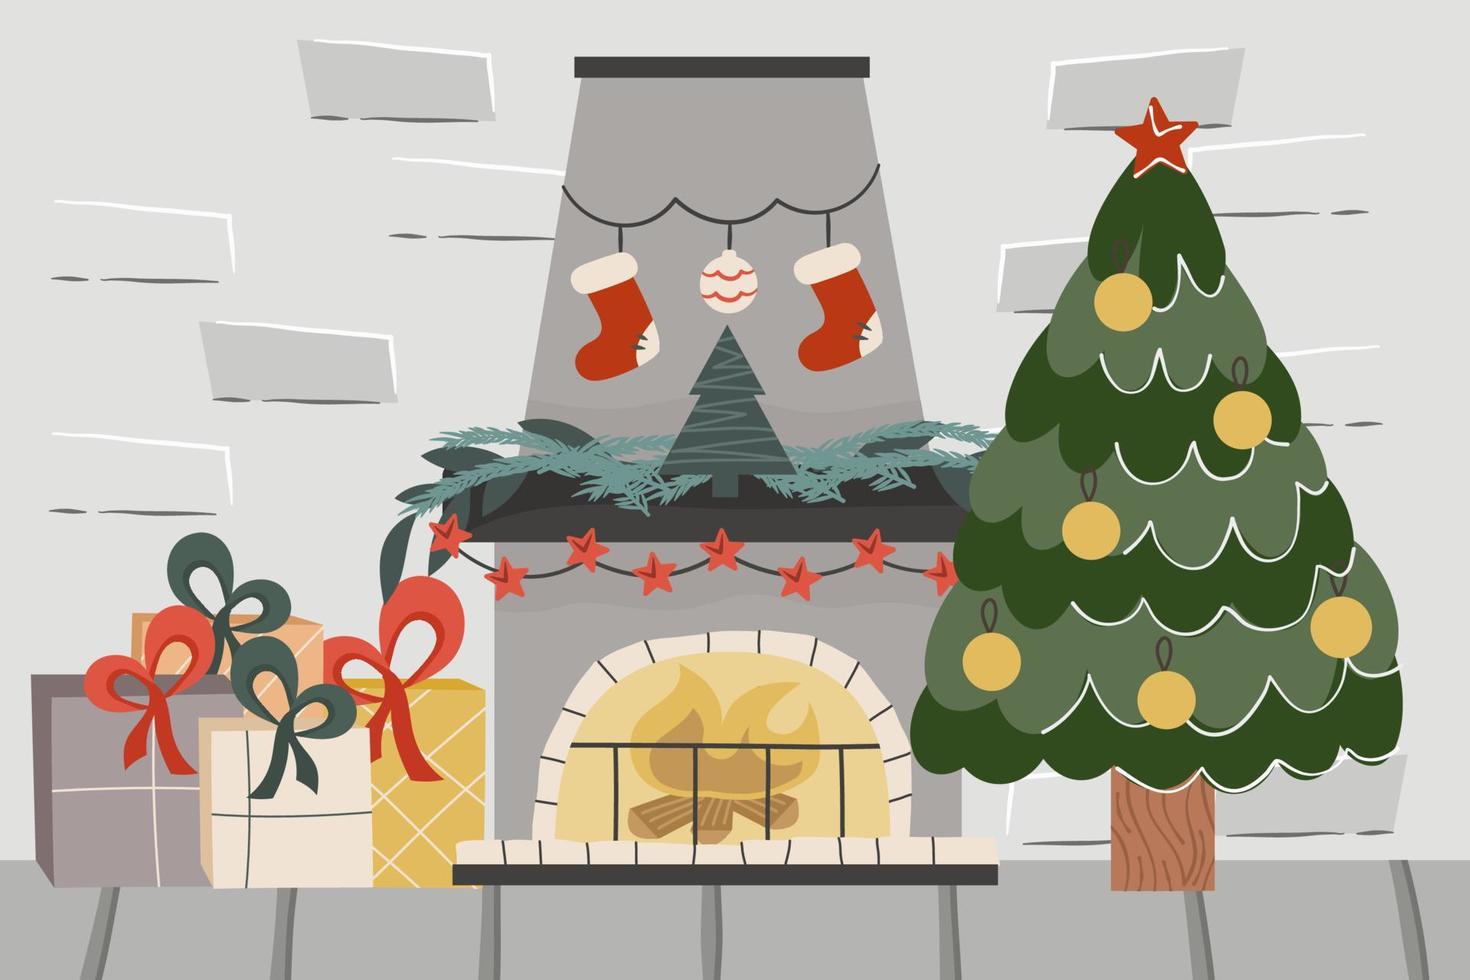 kerst baksteen loft met open haard en tree.decorated ballen vuren, open haard met kaarsen en geschenken. vectorillustratie van een feestelijk interieur vector